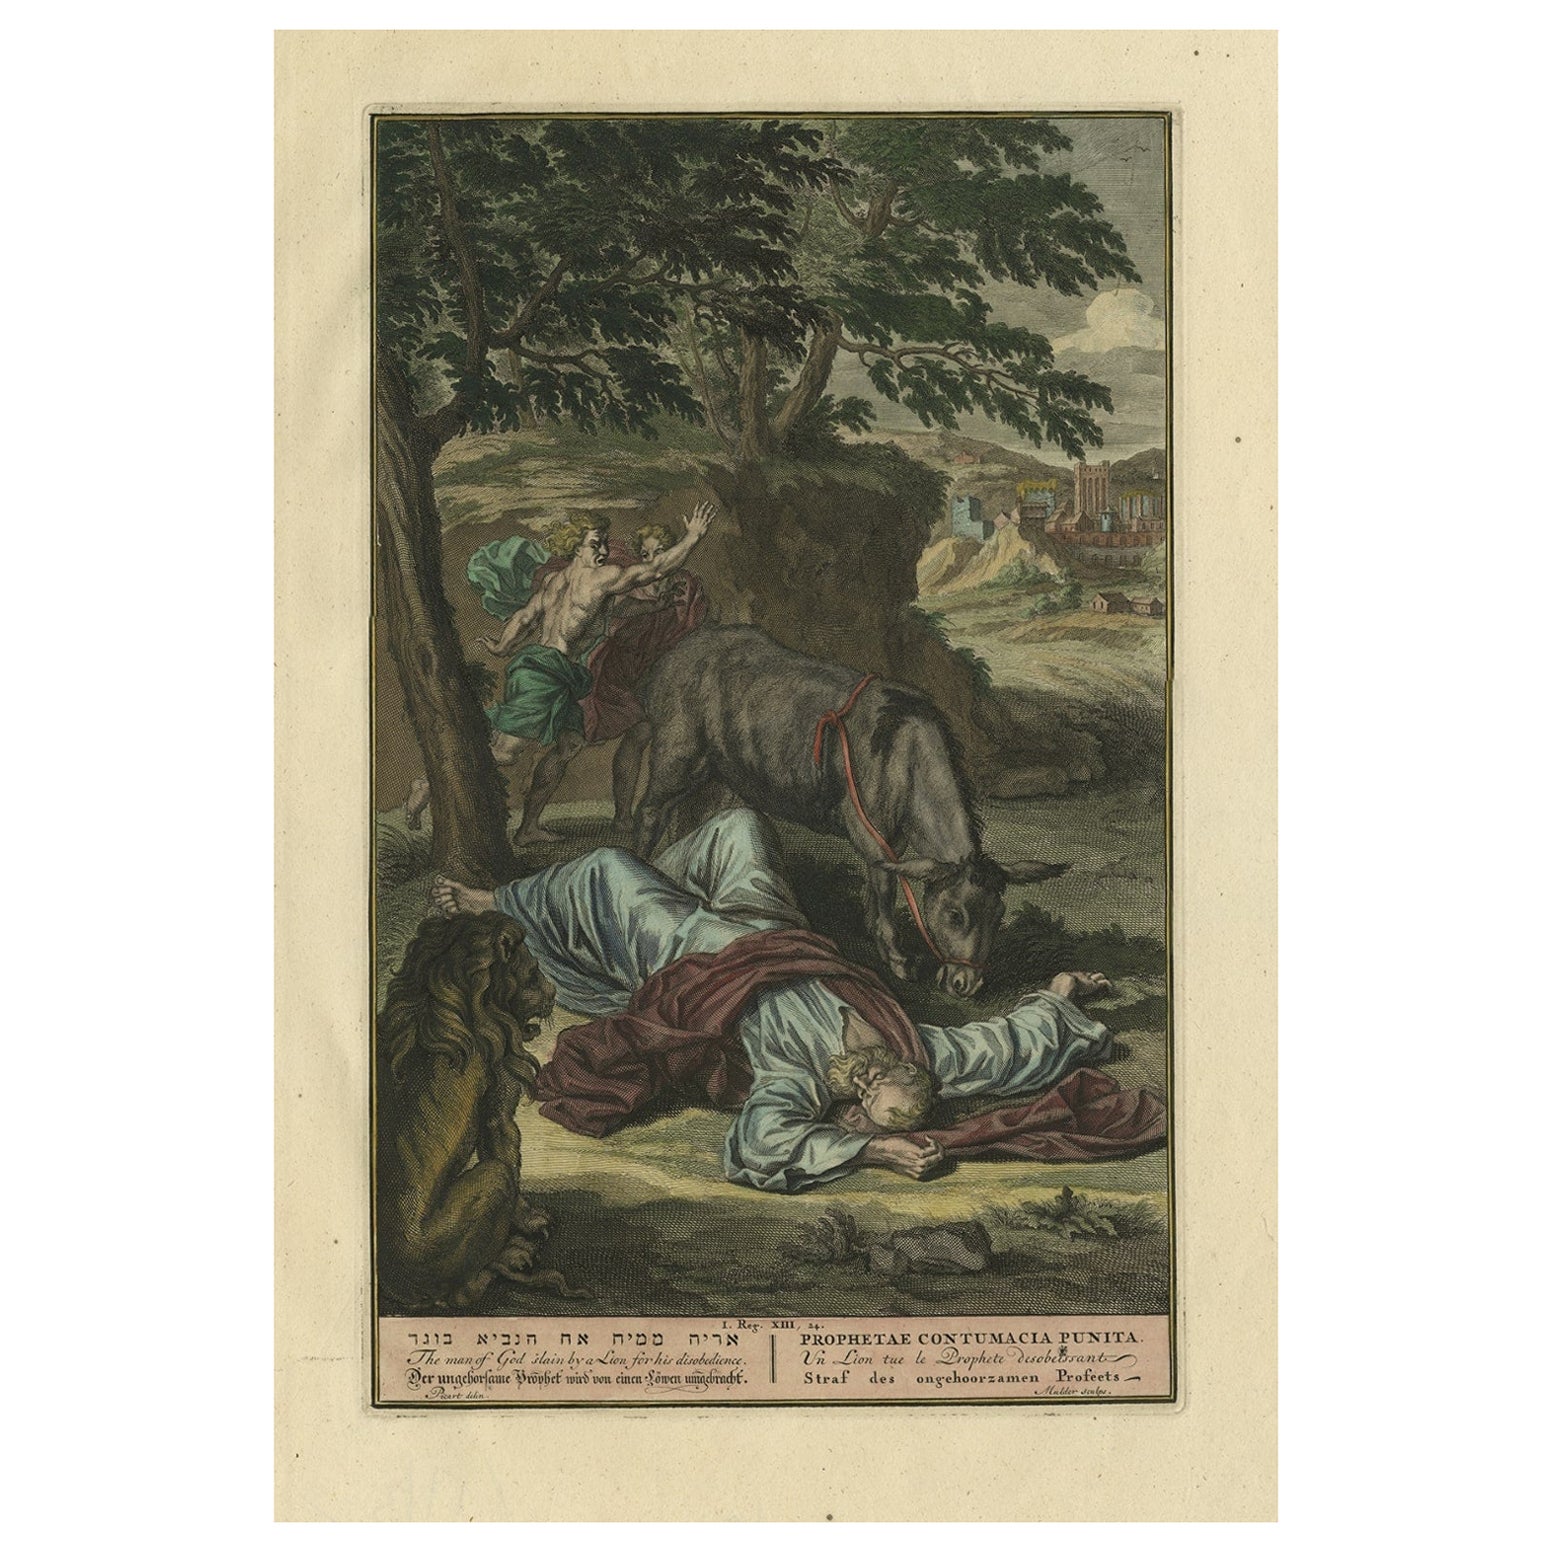 Original antiker Originaldruck, der den von einem Löwen getöteten Geister zeigt, „I Kings XII“, 1728